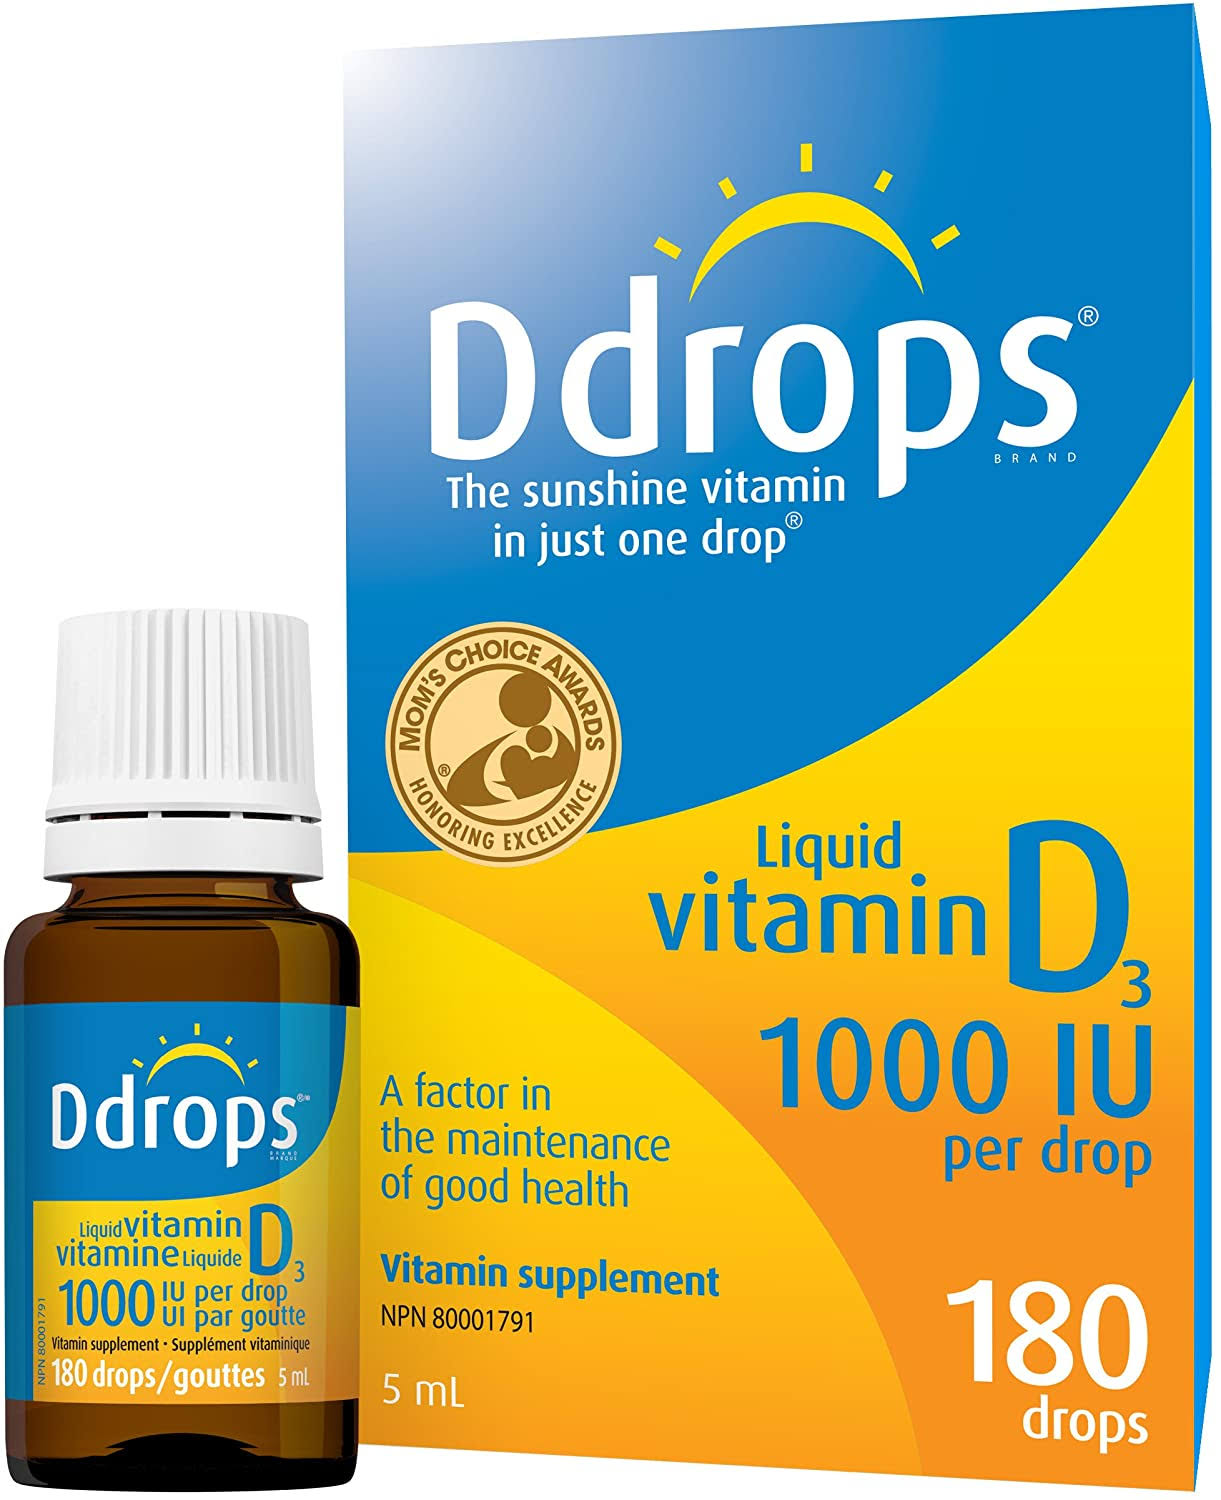 Ddrops Liquid Vitamin D3 Vitamin Supplement - 180 Drops